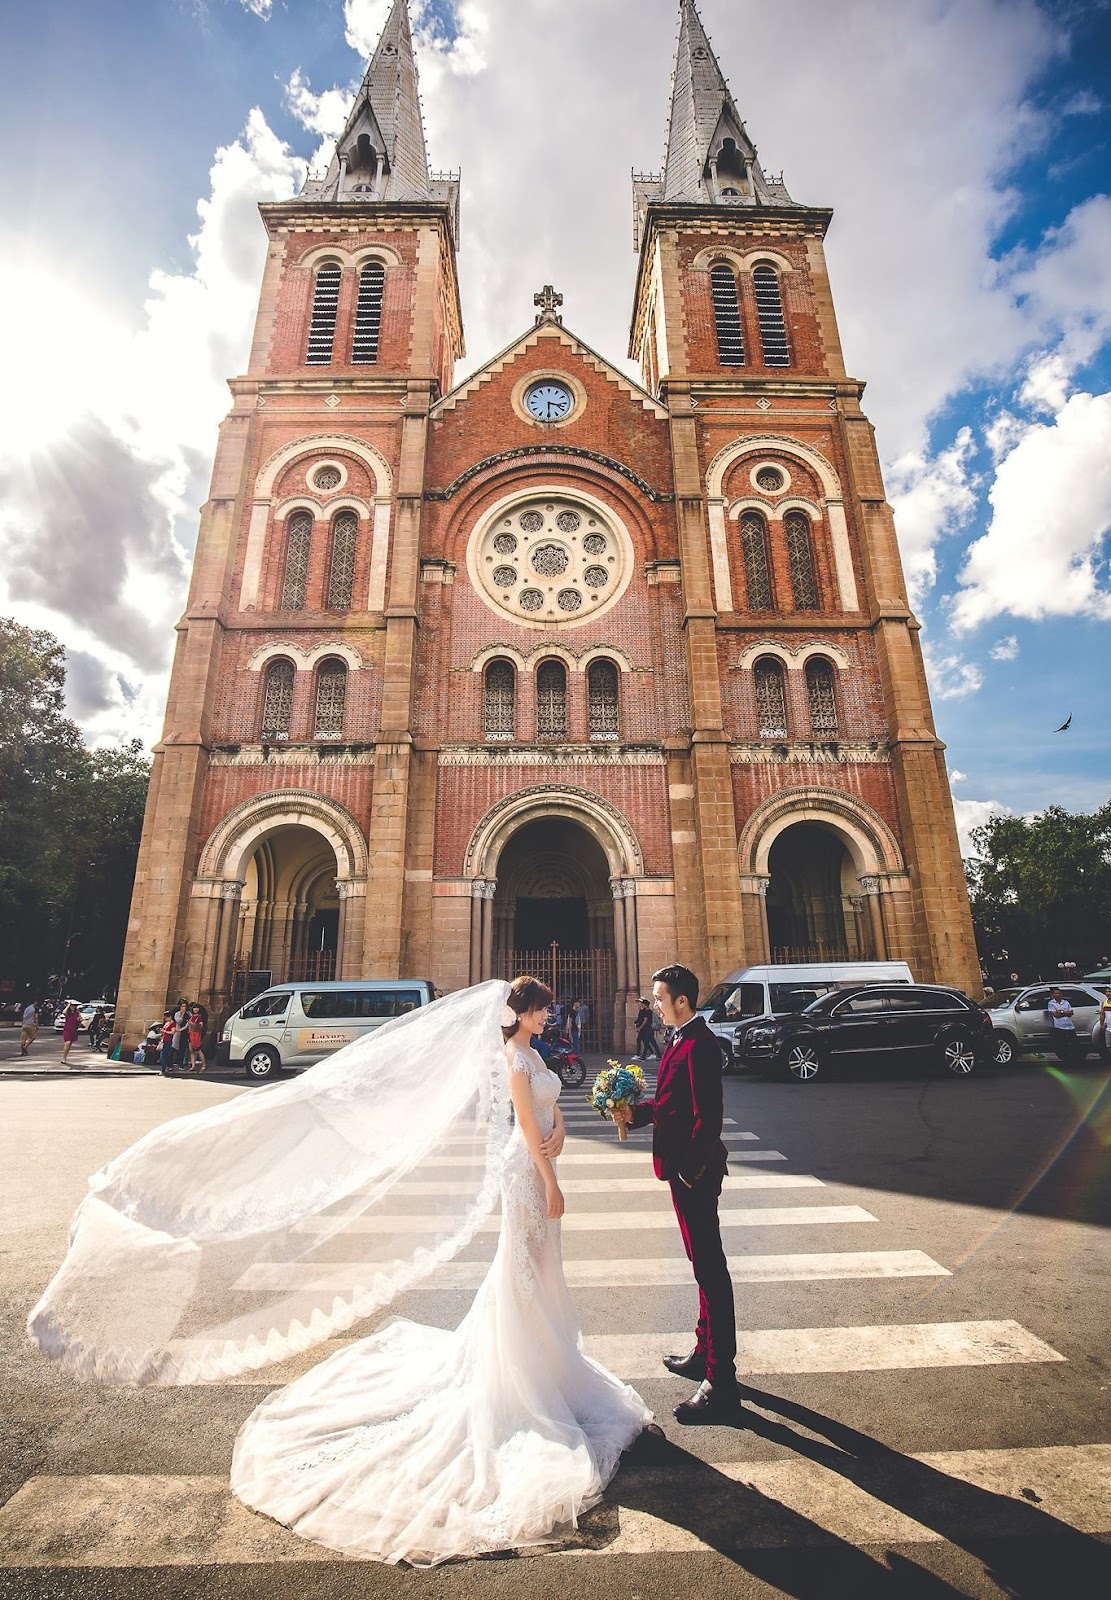 Đặc sắc hơn với bộ ảnh cưới được chụp tại Nhà thờ Đức Bà 